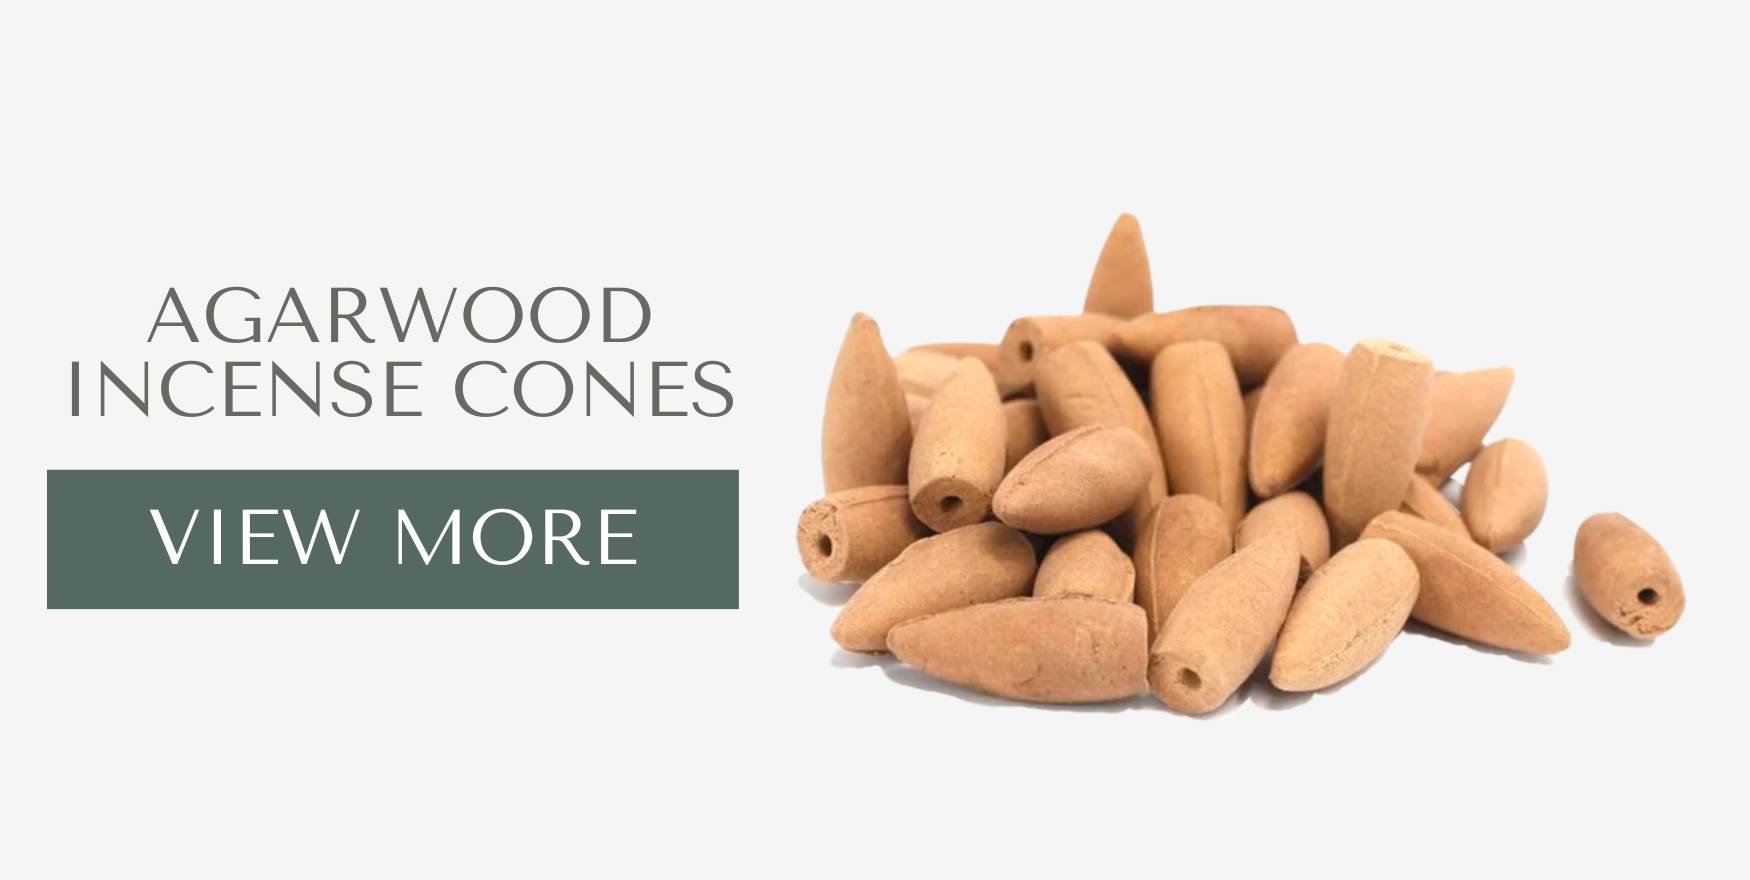 Agarwood incense cones